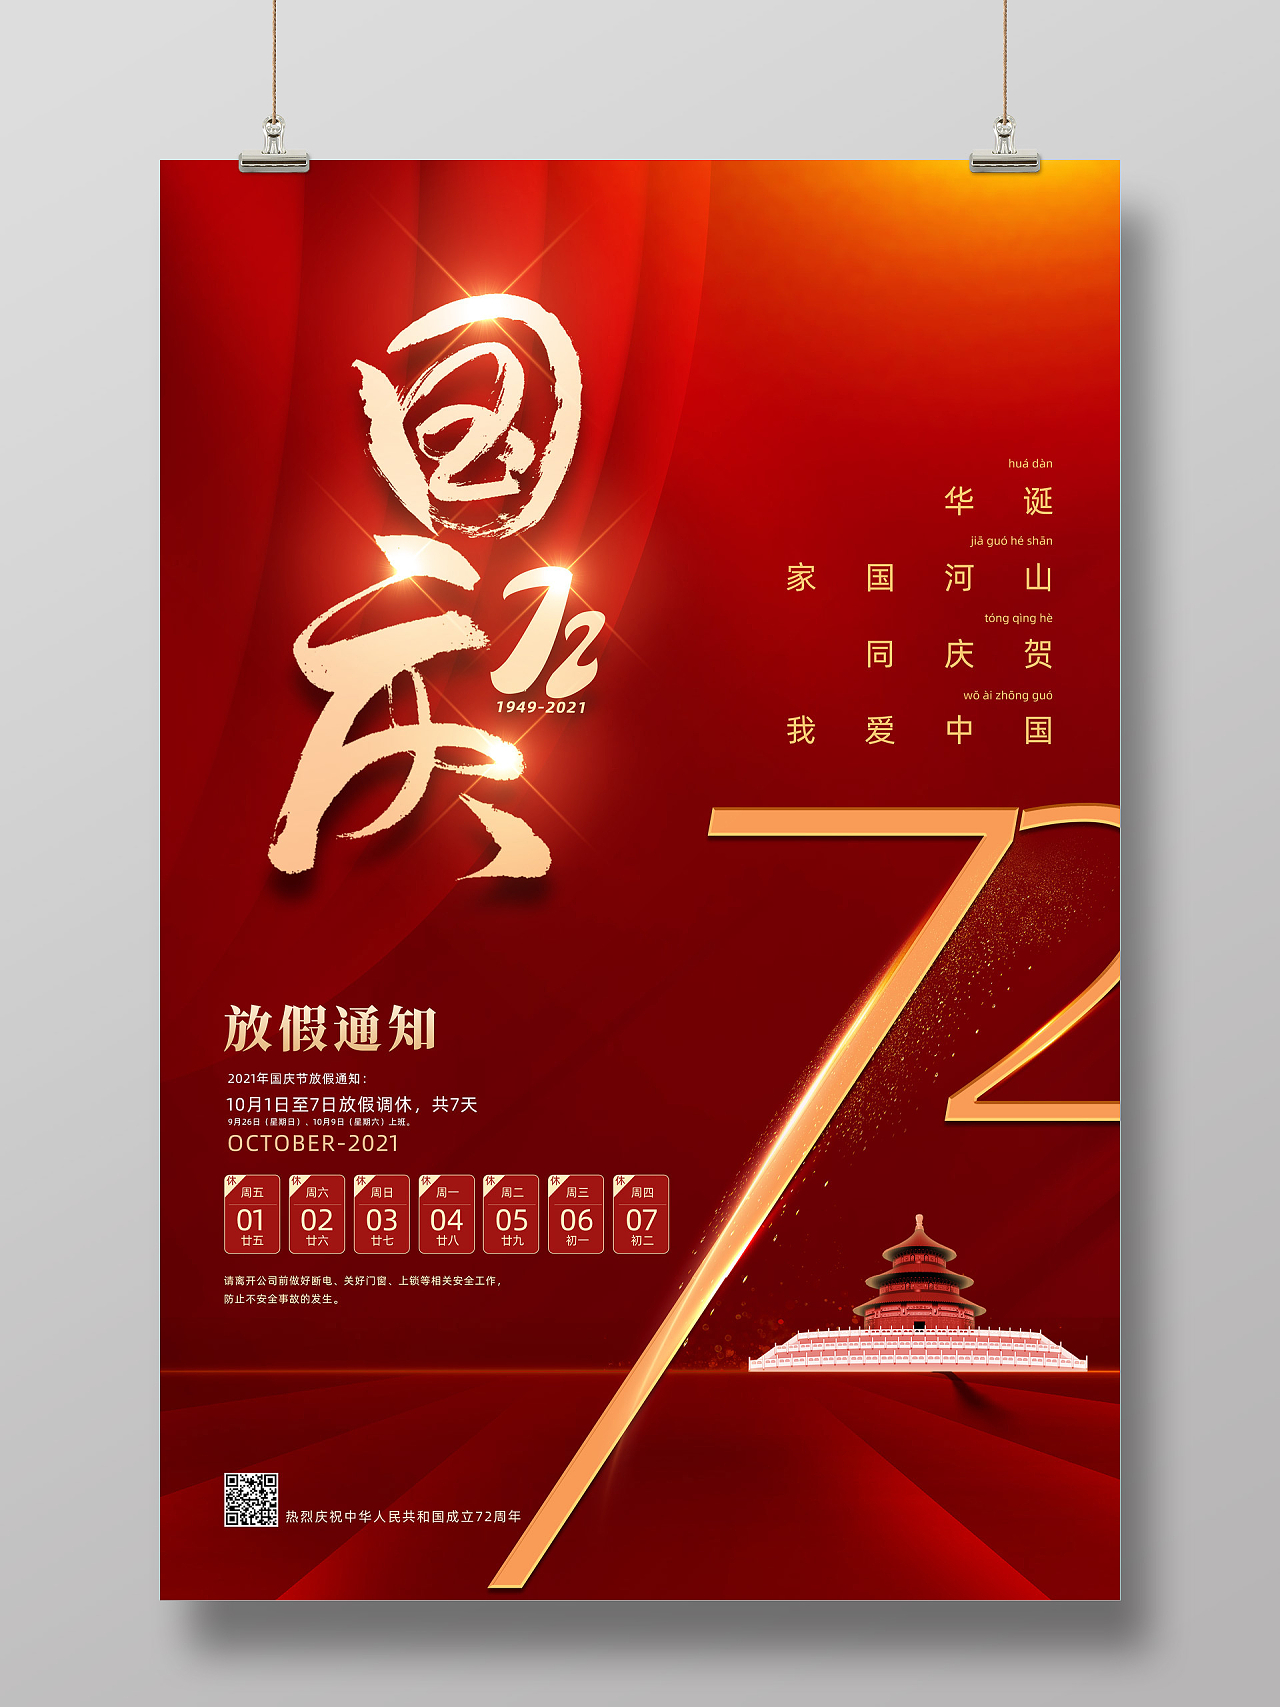 红色大气红绸国庆节放假通知72周年海报